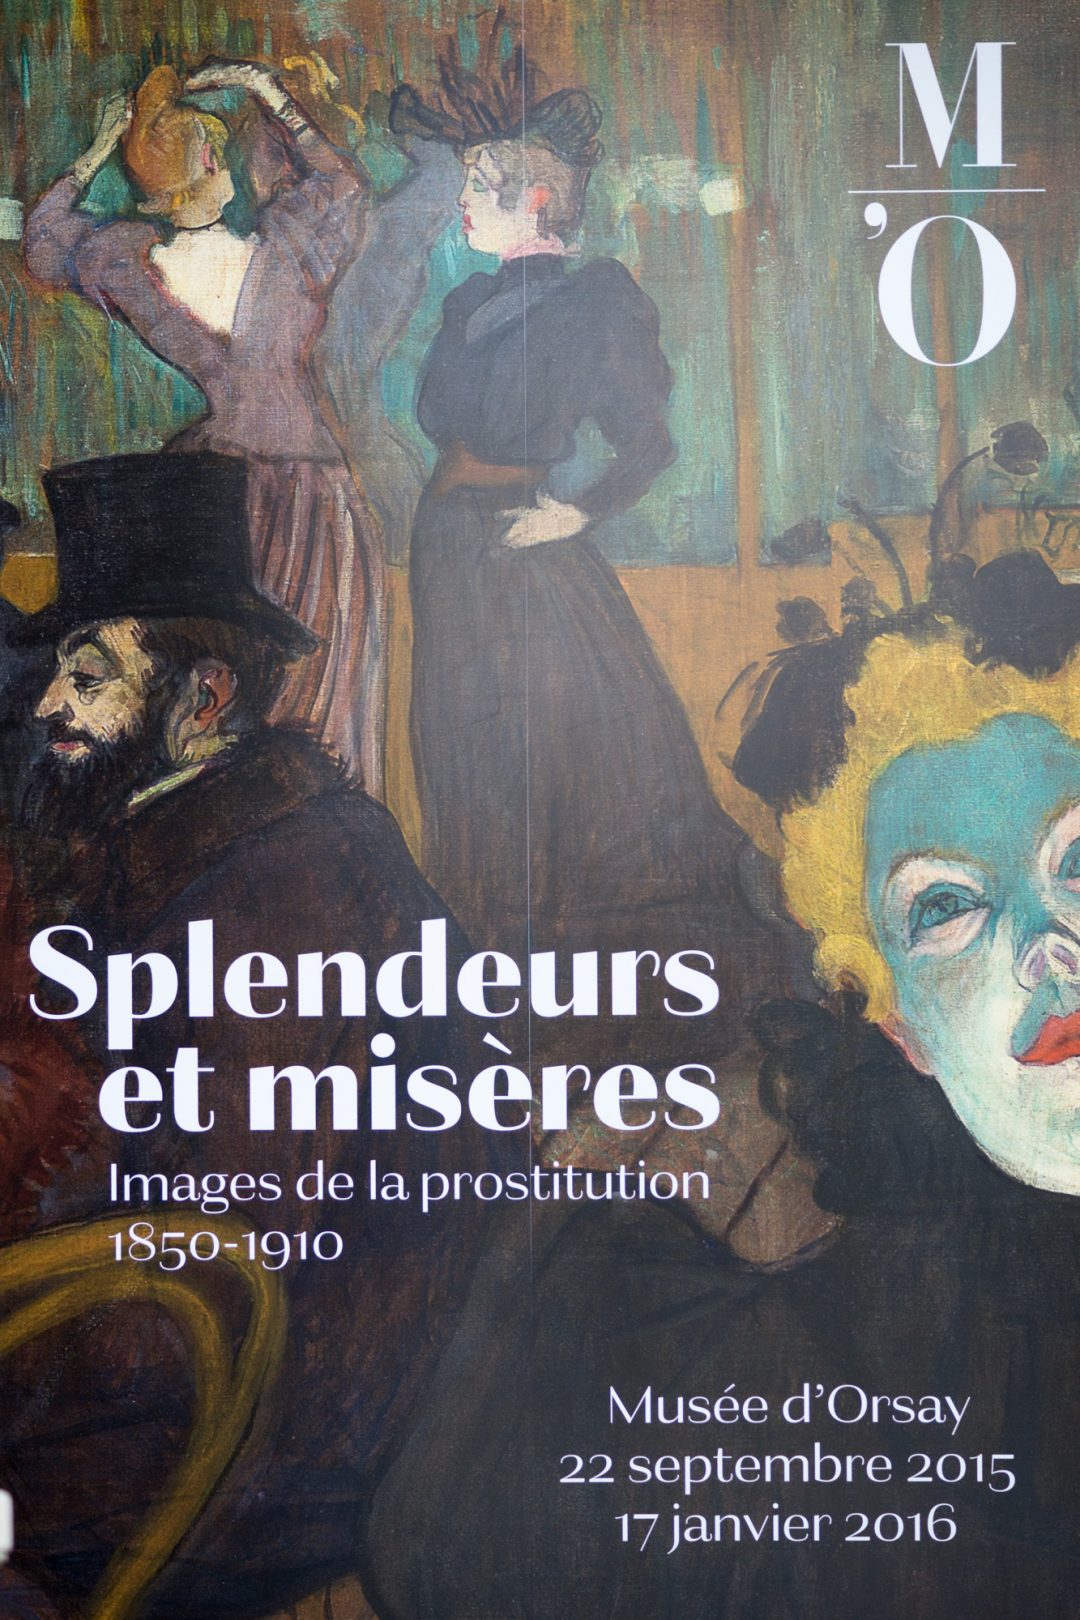 Splendeurs et misères at the Musée d'Orsay